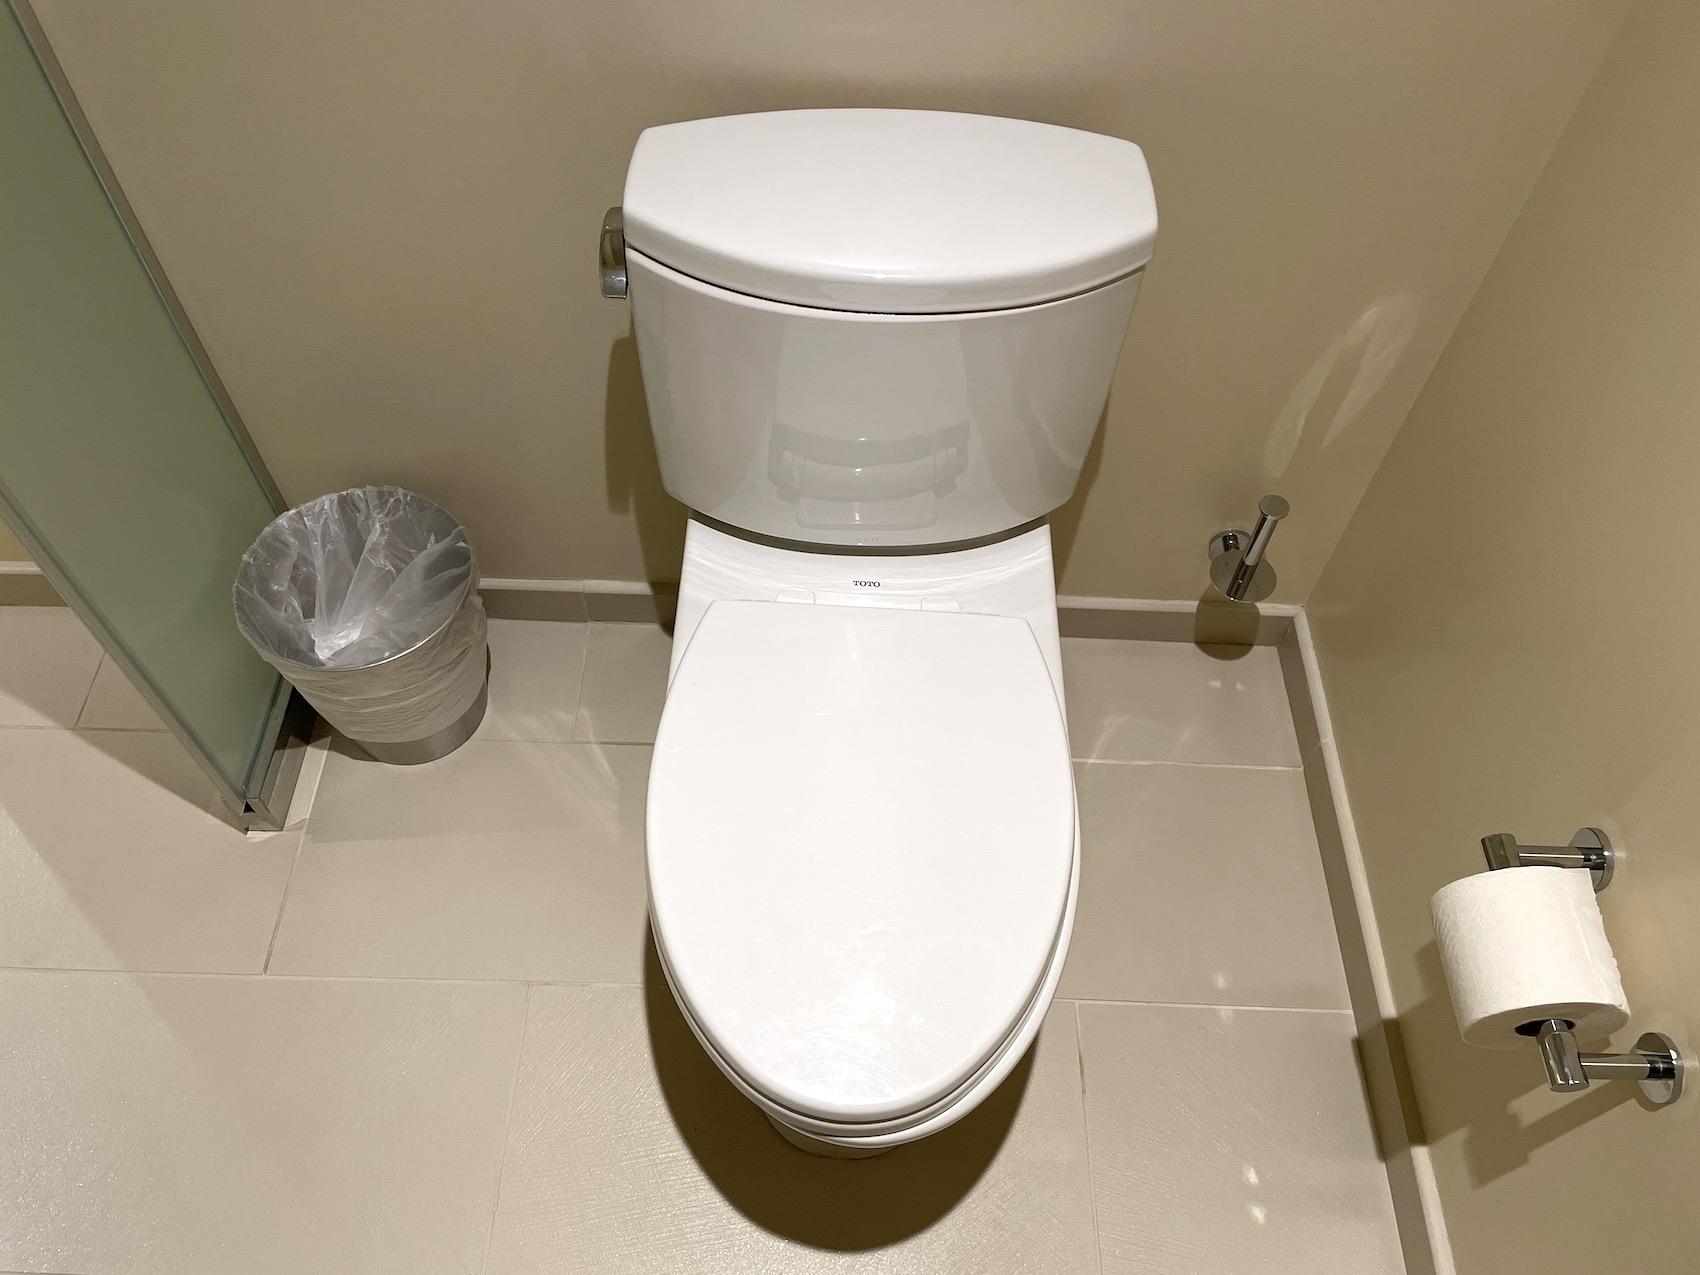 グランド・アイランダーのペントハウス3610号室のゲスト用のバスルームにあるトイレ